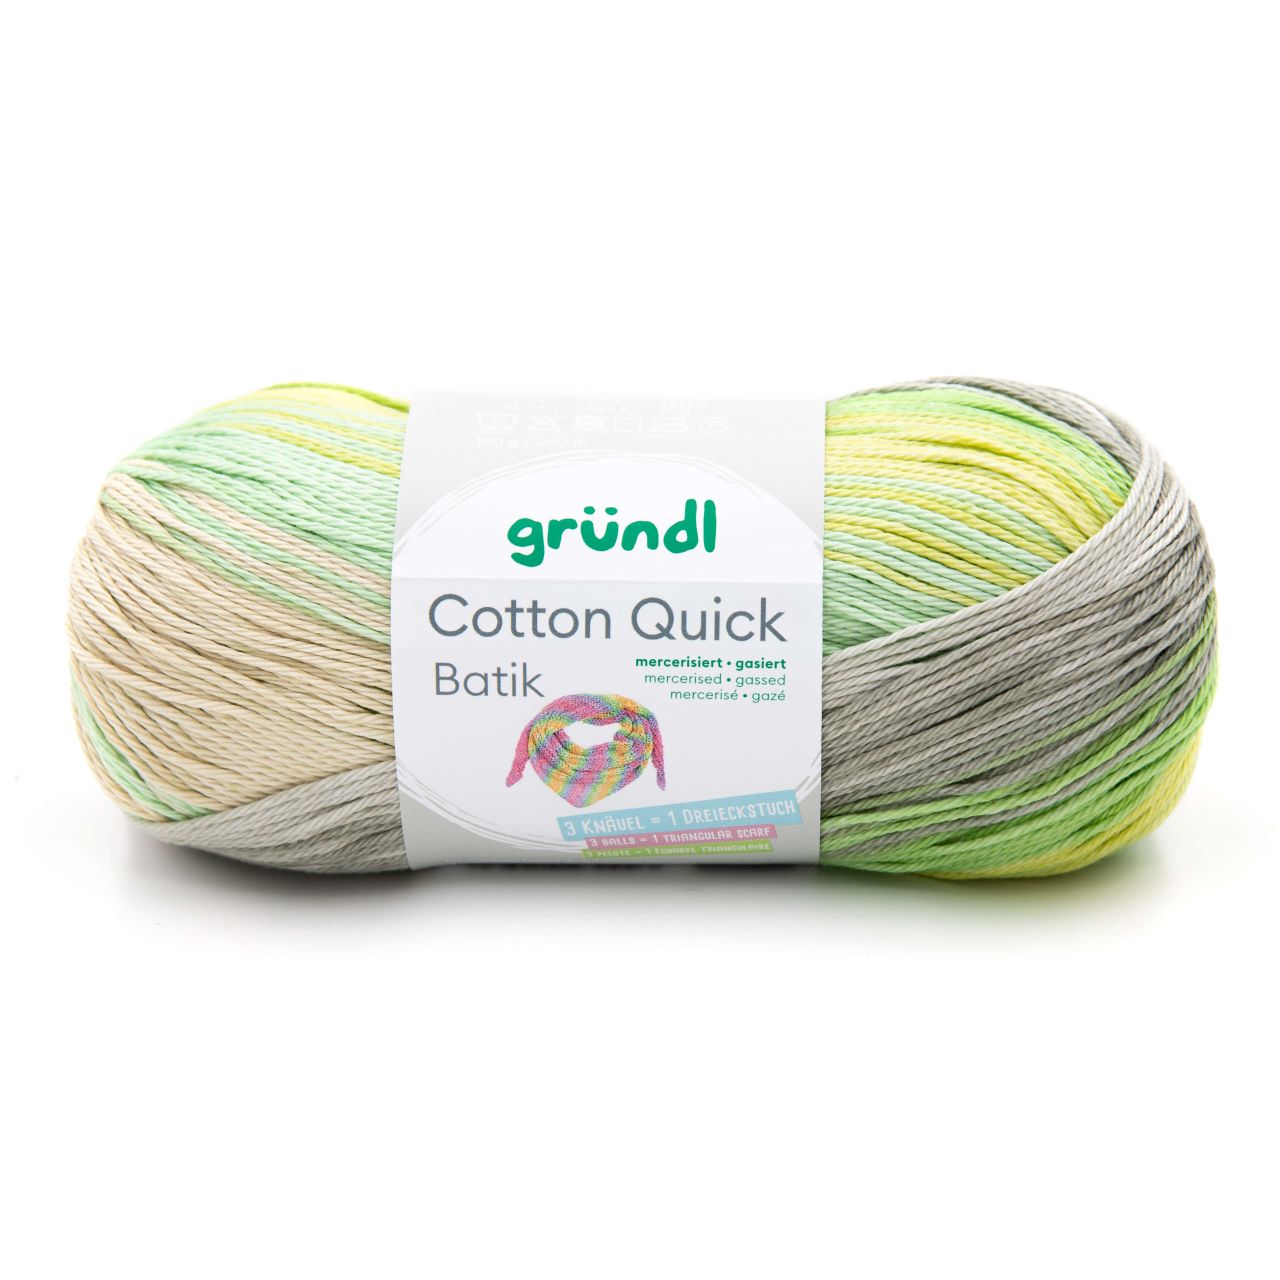 Gründl Wolle Cotton Quick Batik 100 g natur-türkis-gelb-grün von gründl